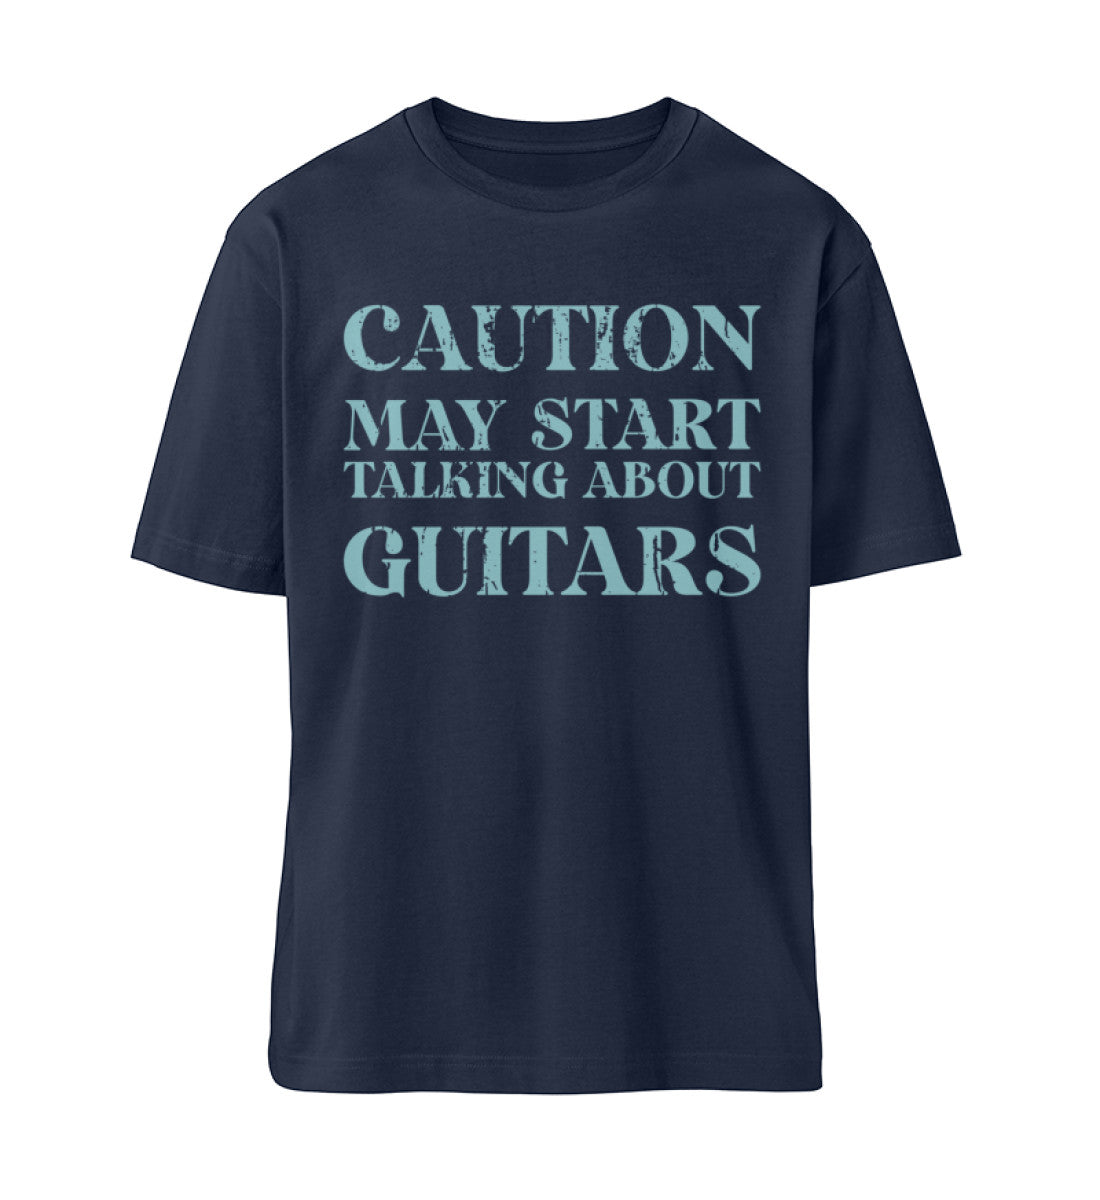 French Navy Blue T-Shirt Unisex Relaxed Fit für Frauen und Männer bedruckt mit dem Design der Roger Rockawoo Clothing Kollektion Caution may start talking about guitars